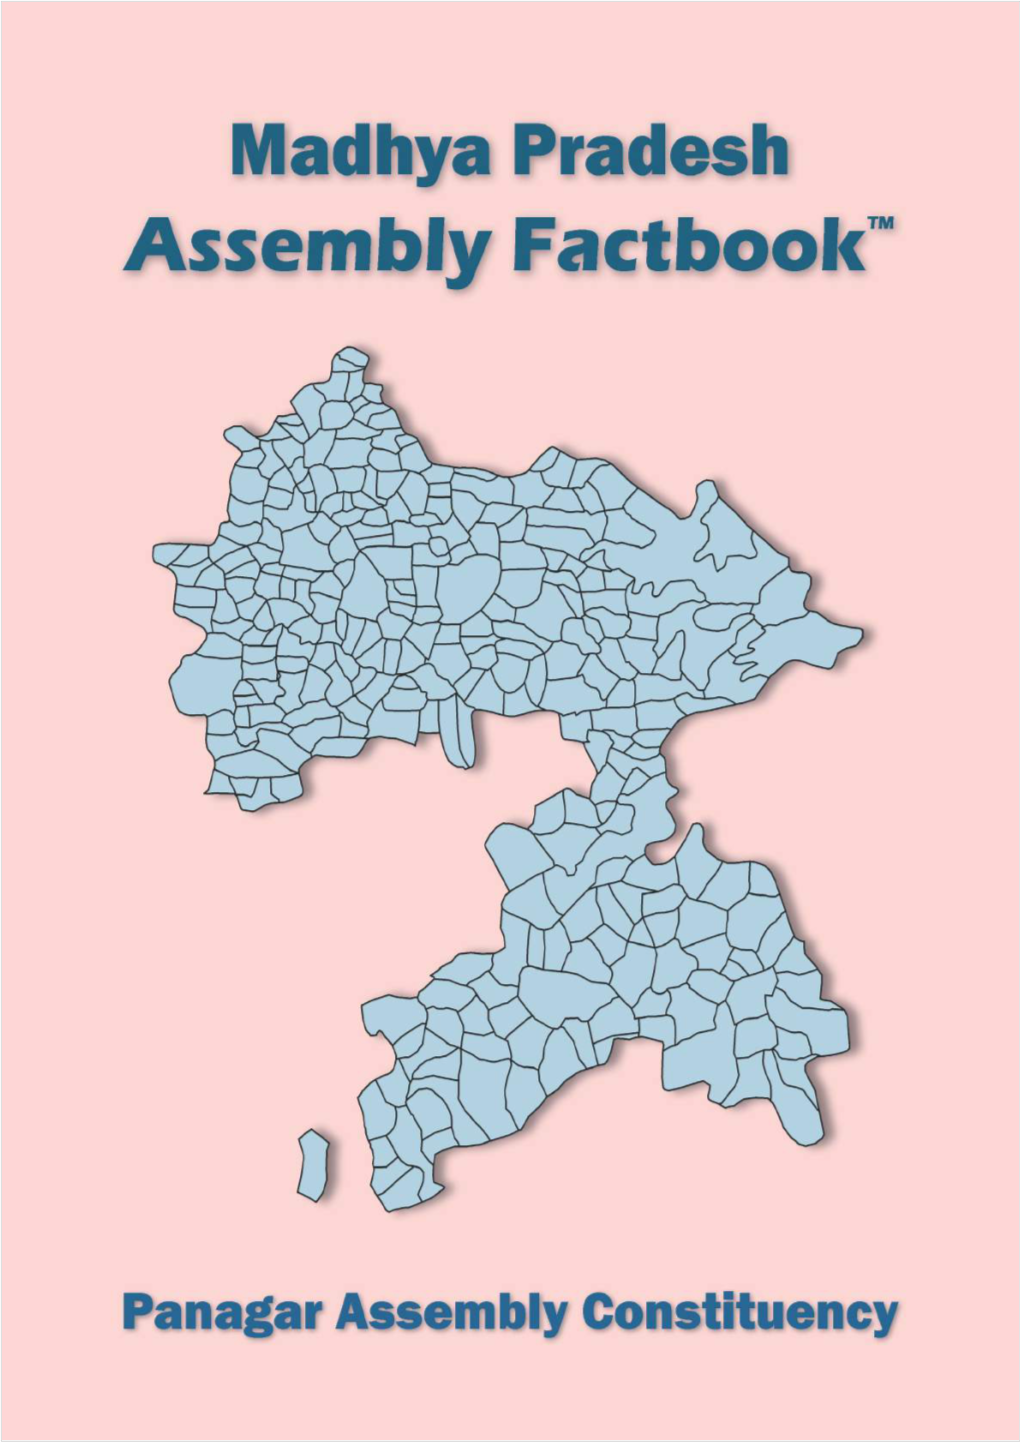 Panagar Assembly Madhya Pradesh Factbook